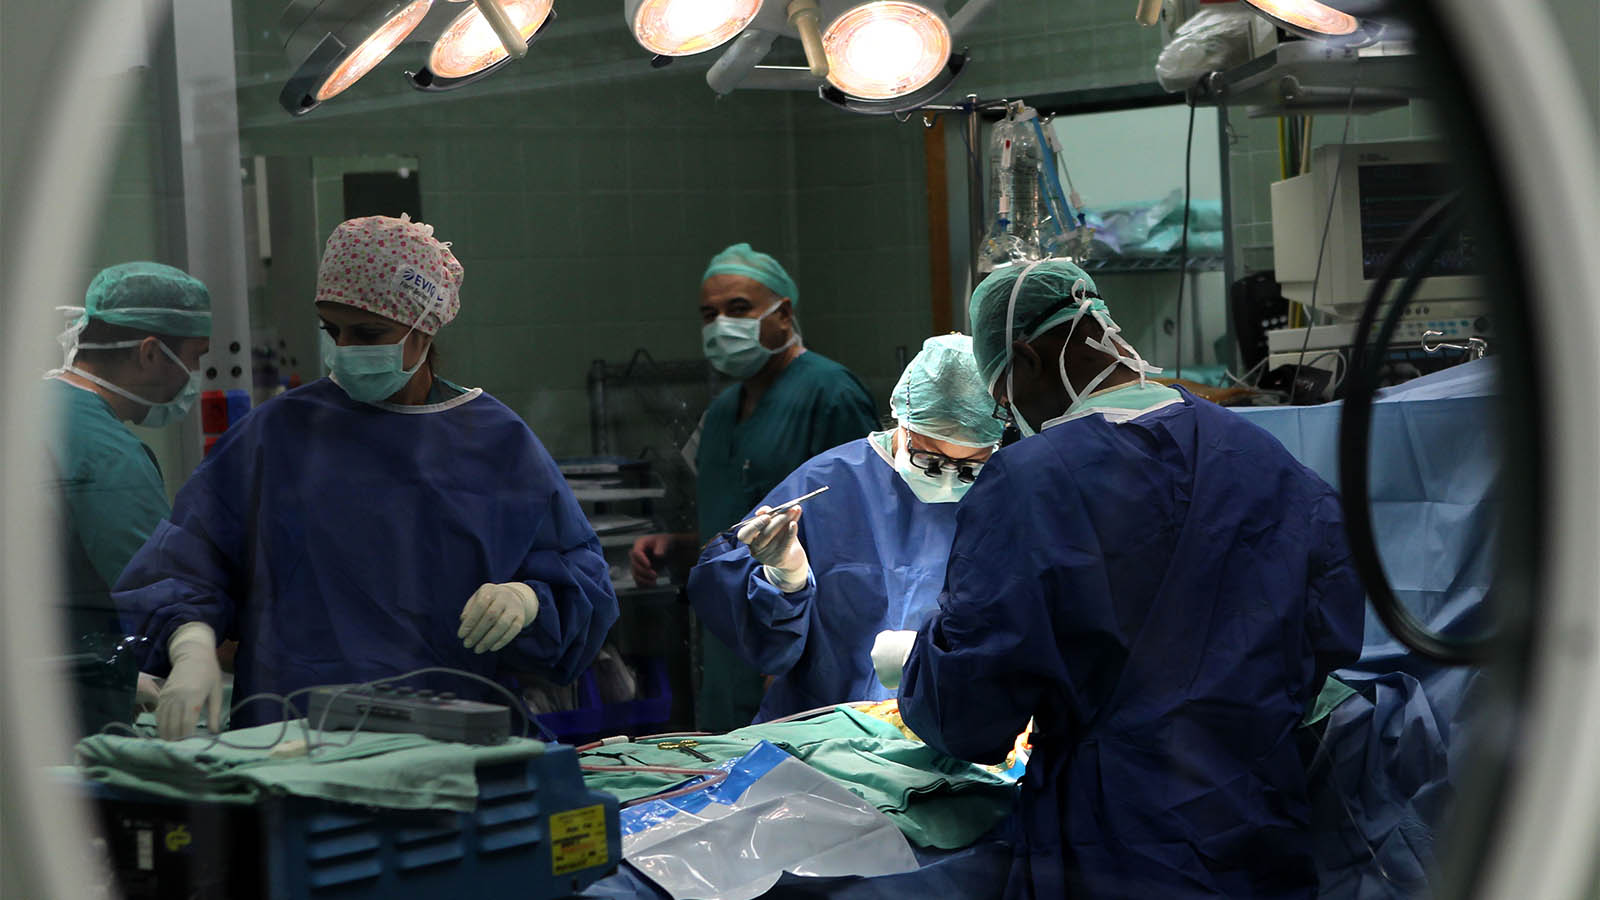 רופאים בחדר ניתוח בישראל. למצולמים אין קשר לכתבה. (צילום: נתי שוחט/ פלאש 90)